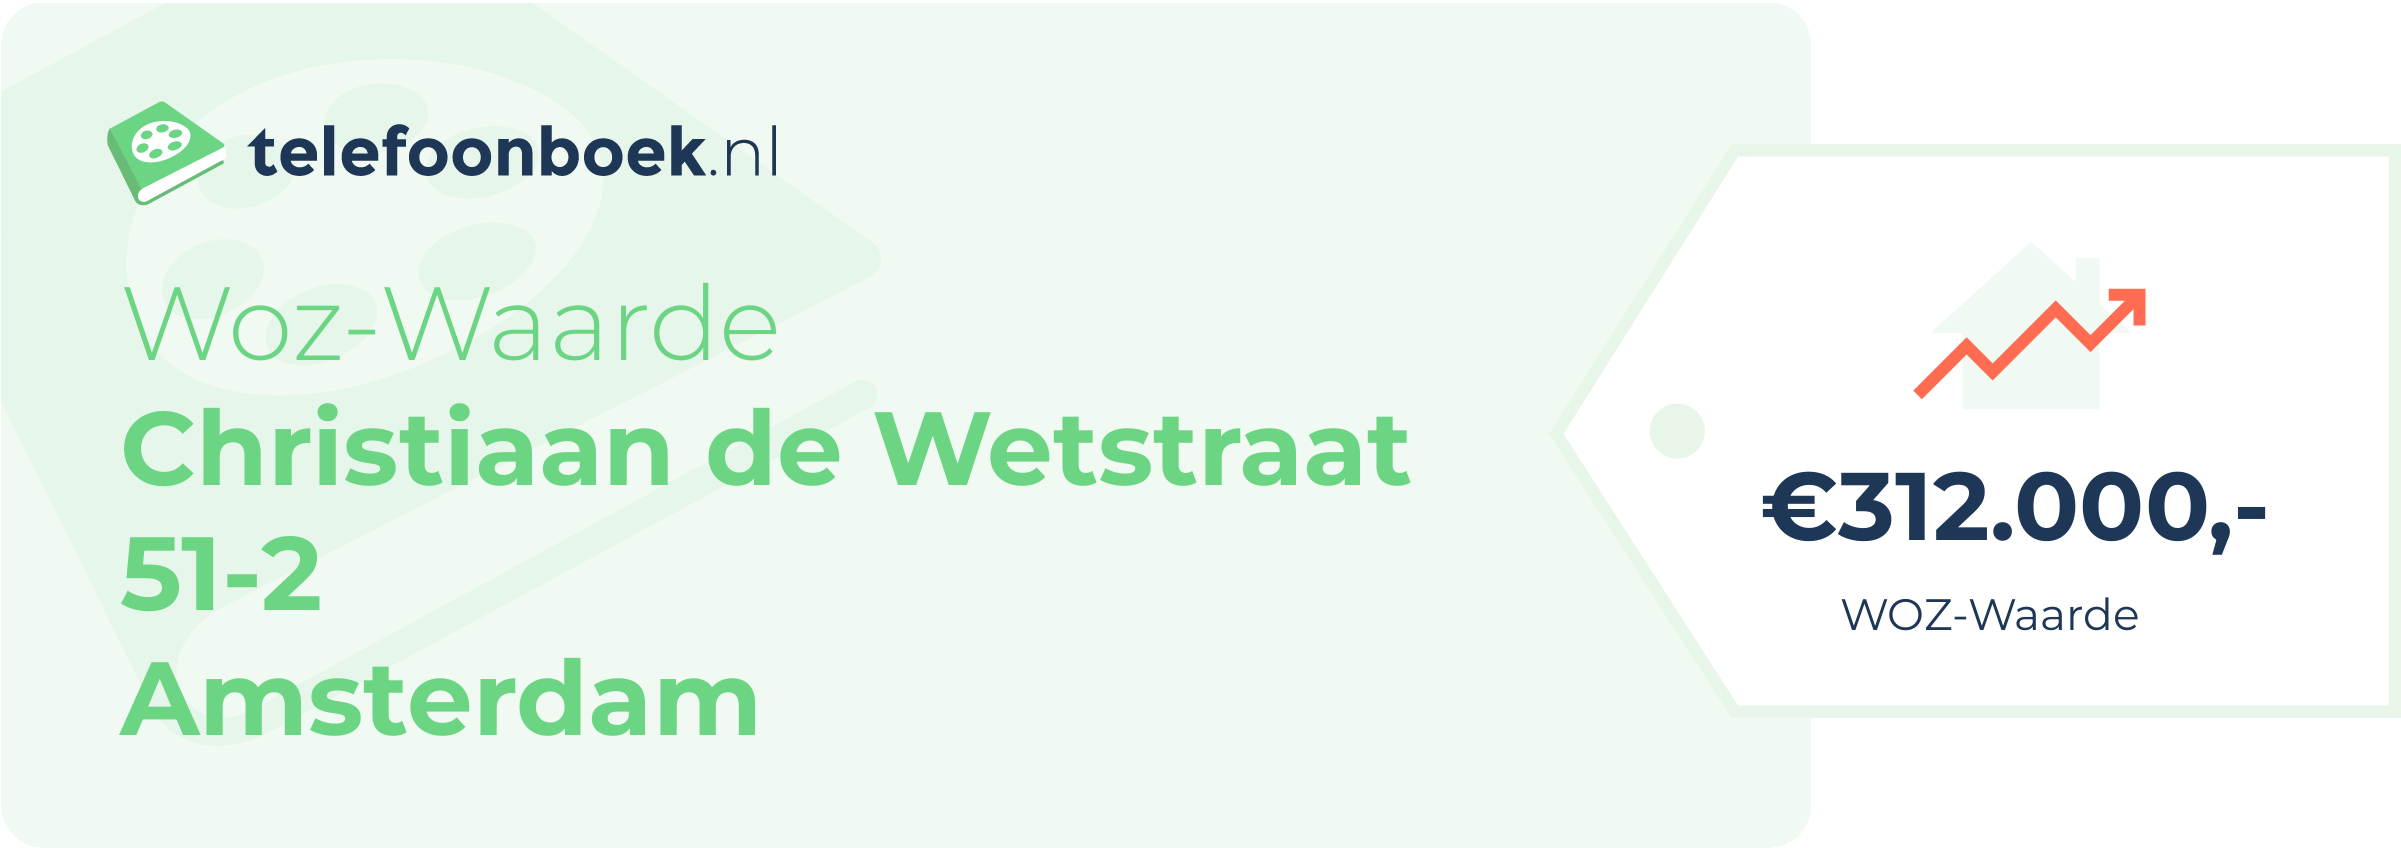 WOZ-waarde Christiaan De Wetstraat 51-2 Amsterdam